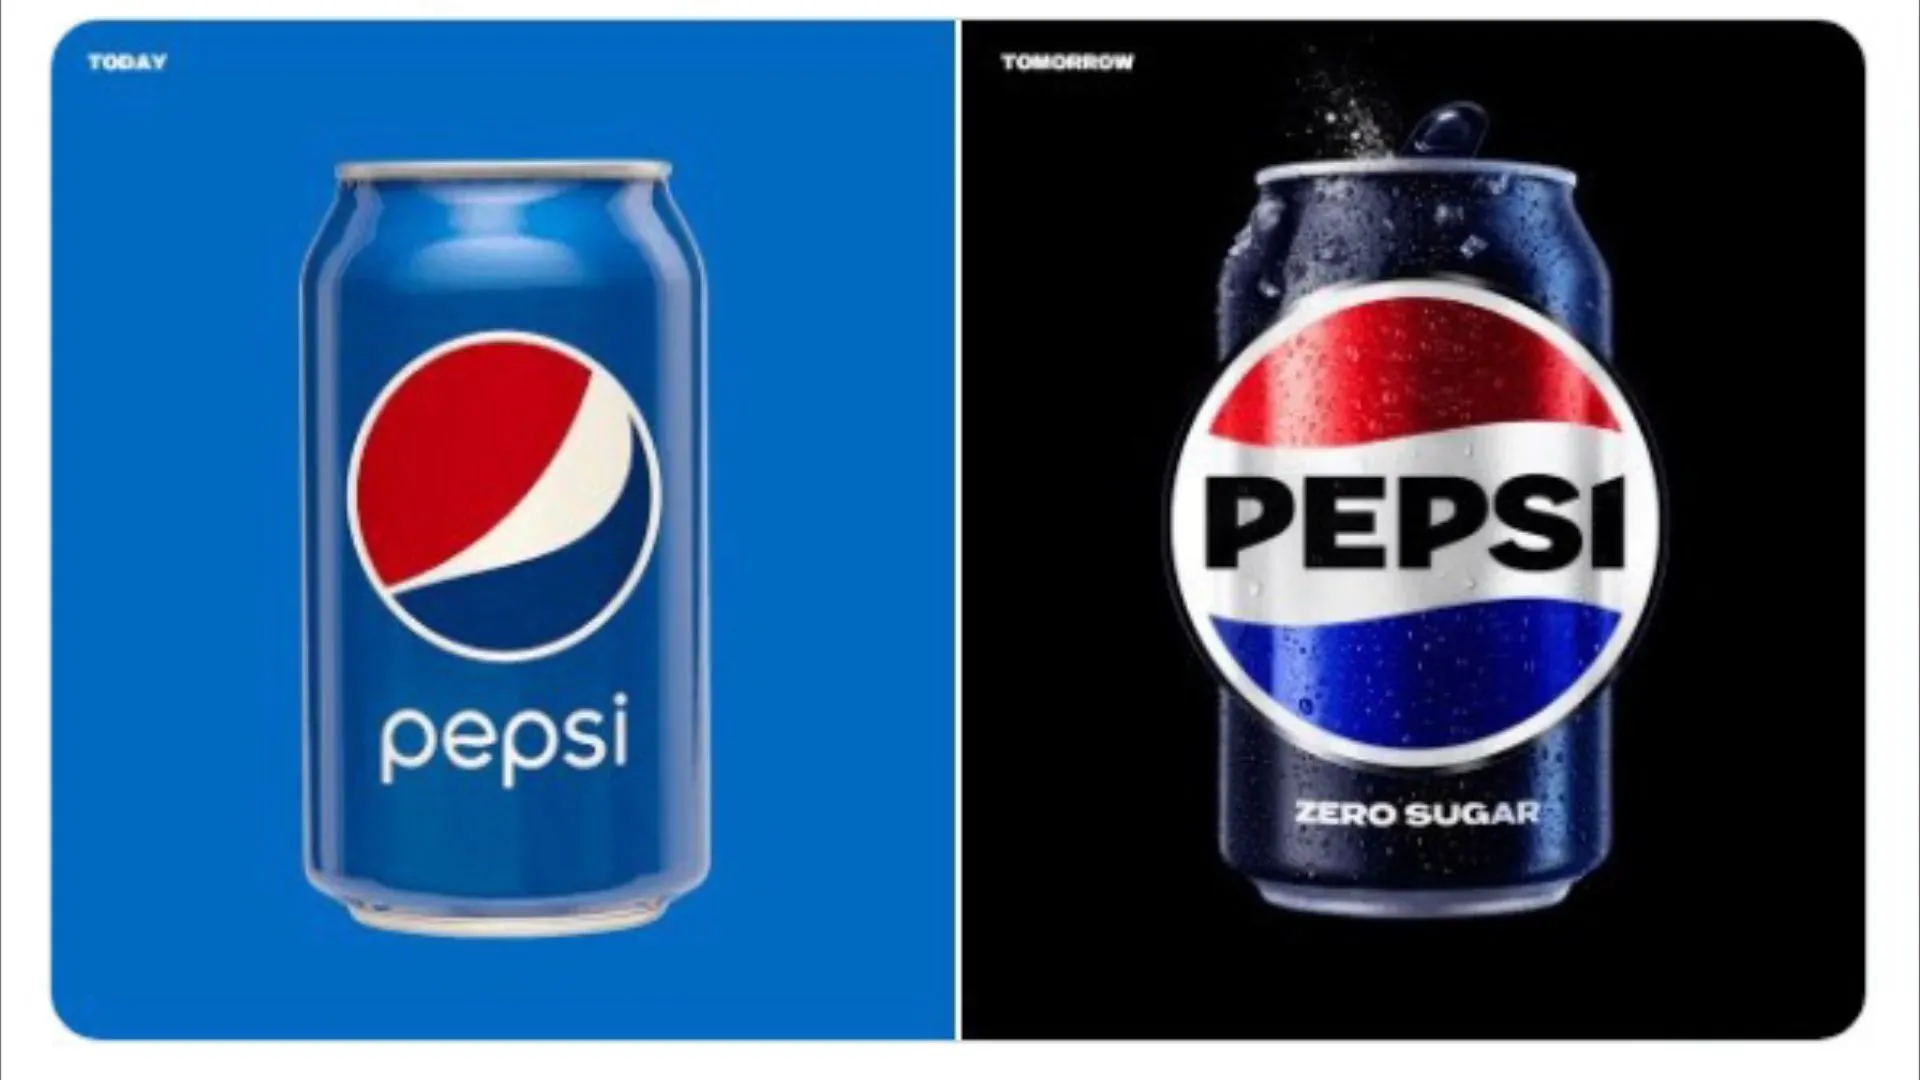 Kultgetränk Pepsi ändert sein Logo